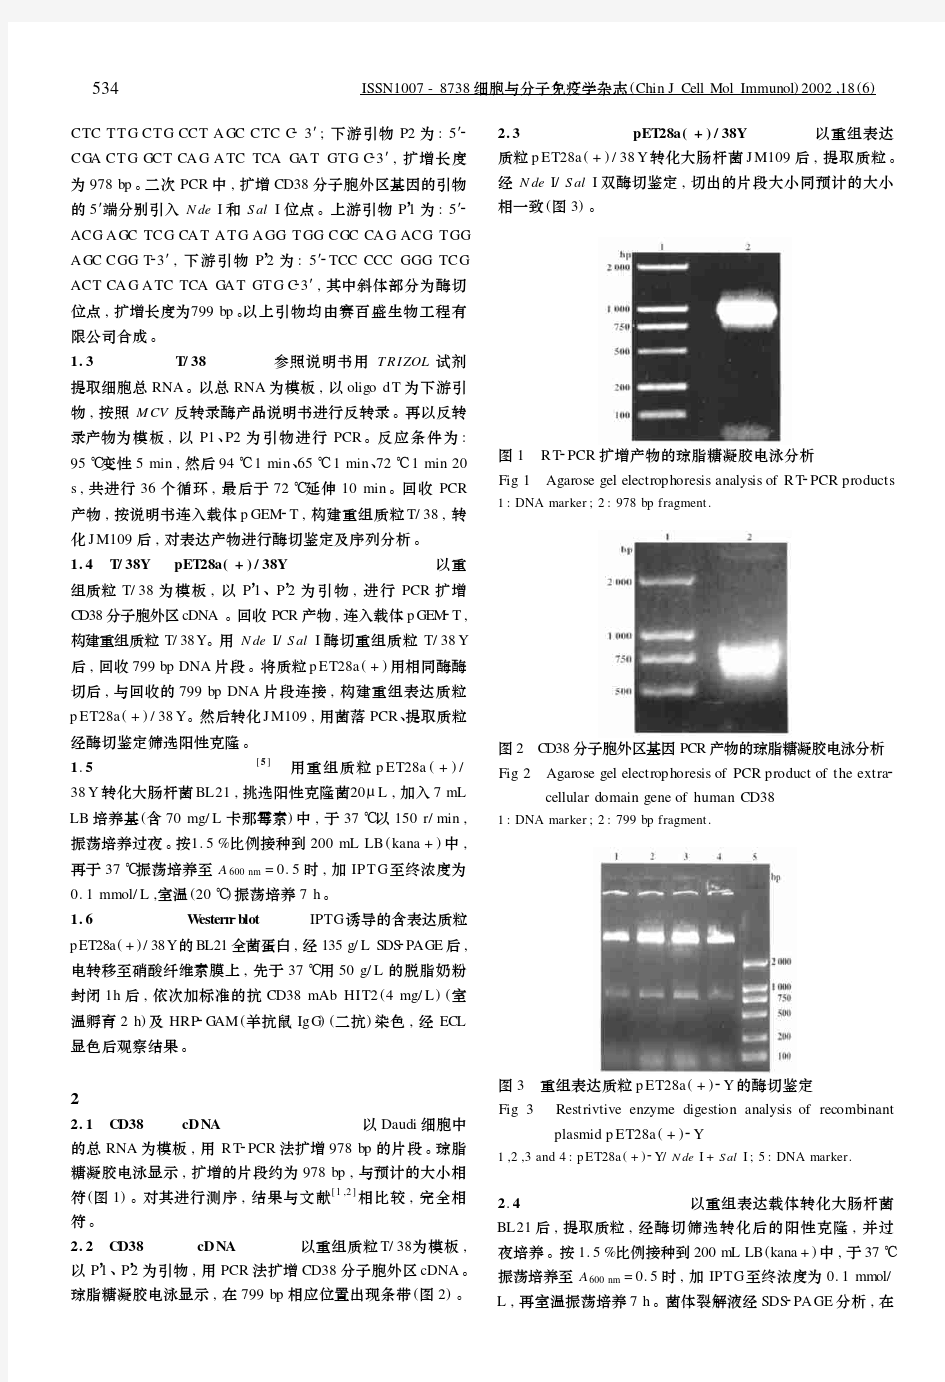 人CD38抗原胞外段基因克隆及表达